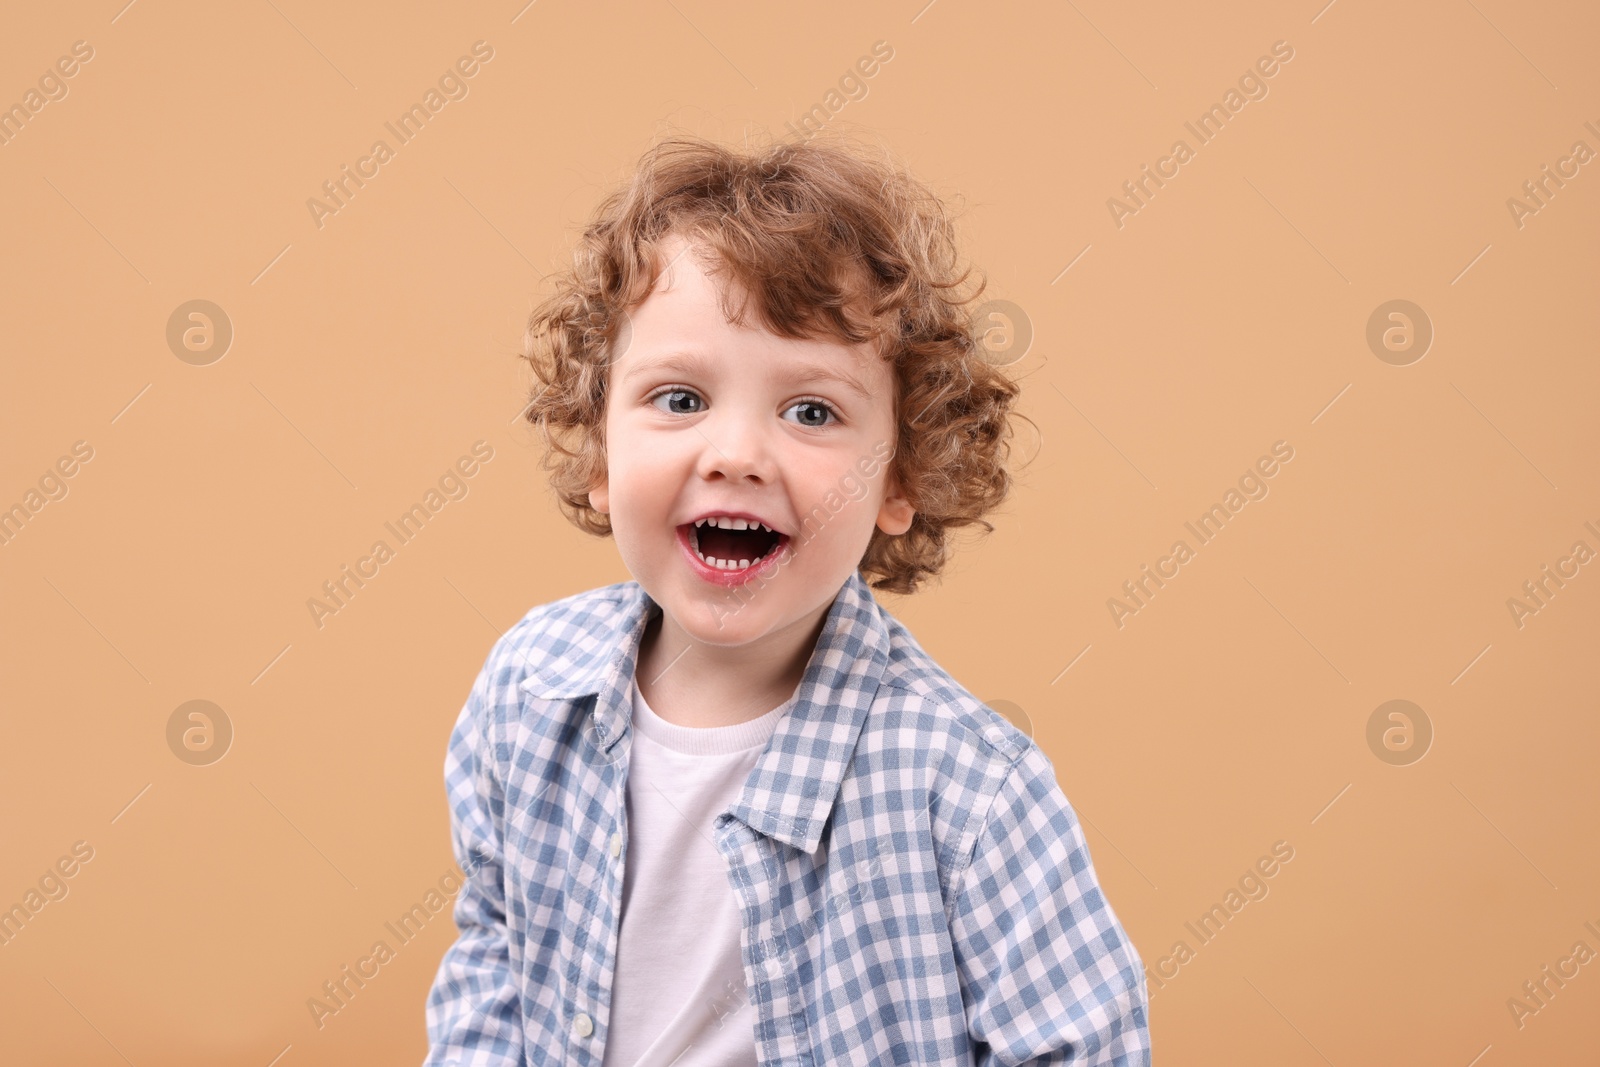 Photo of Portrait of cute little boy on beige background